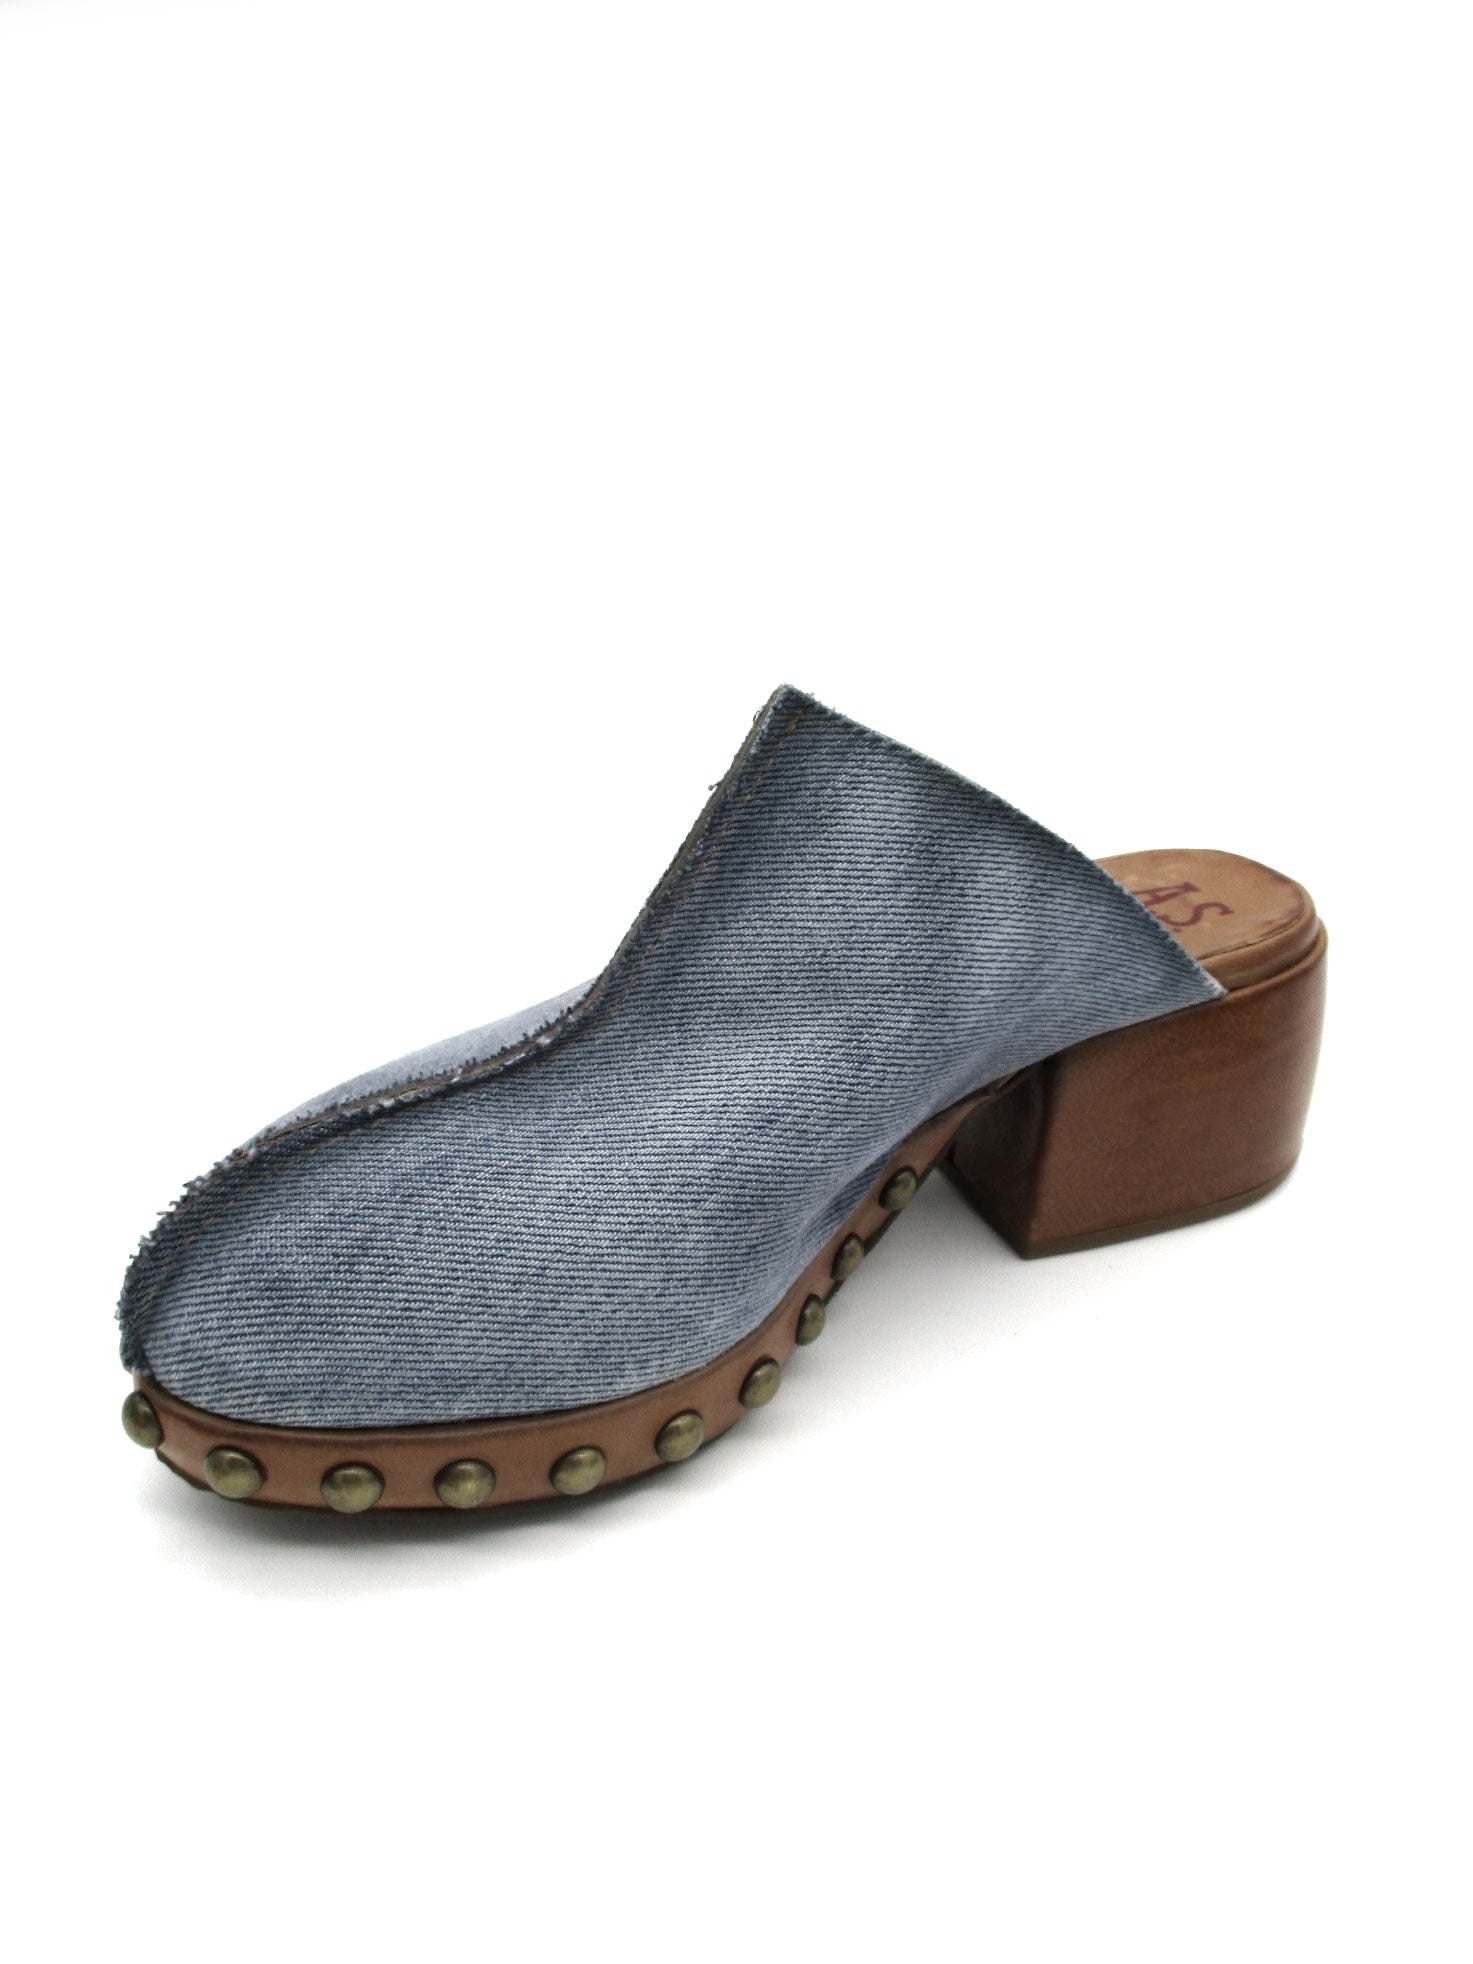 Sandalo in pelle donna As98 Blu Jeans - B36101 -